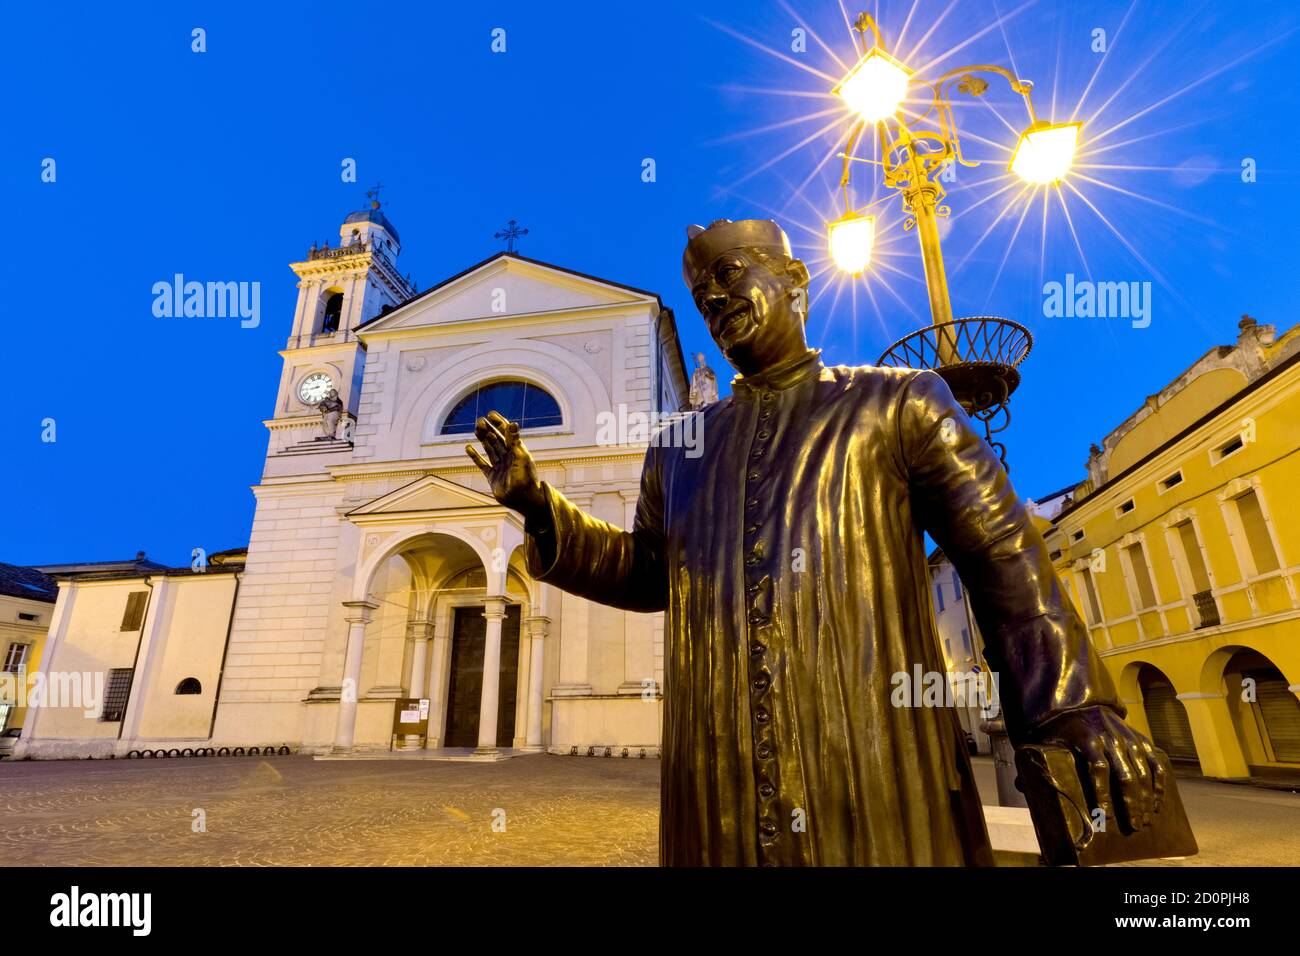 Brescello: La estatua de Don Camillo y la iglesia de Santa Maria Nascente. El pueblo es famoso por las películas de Don Camillo y Peppone. Italia. Foto de stock